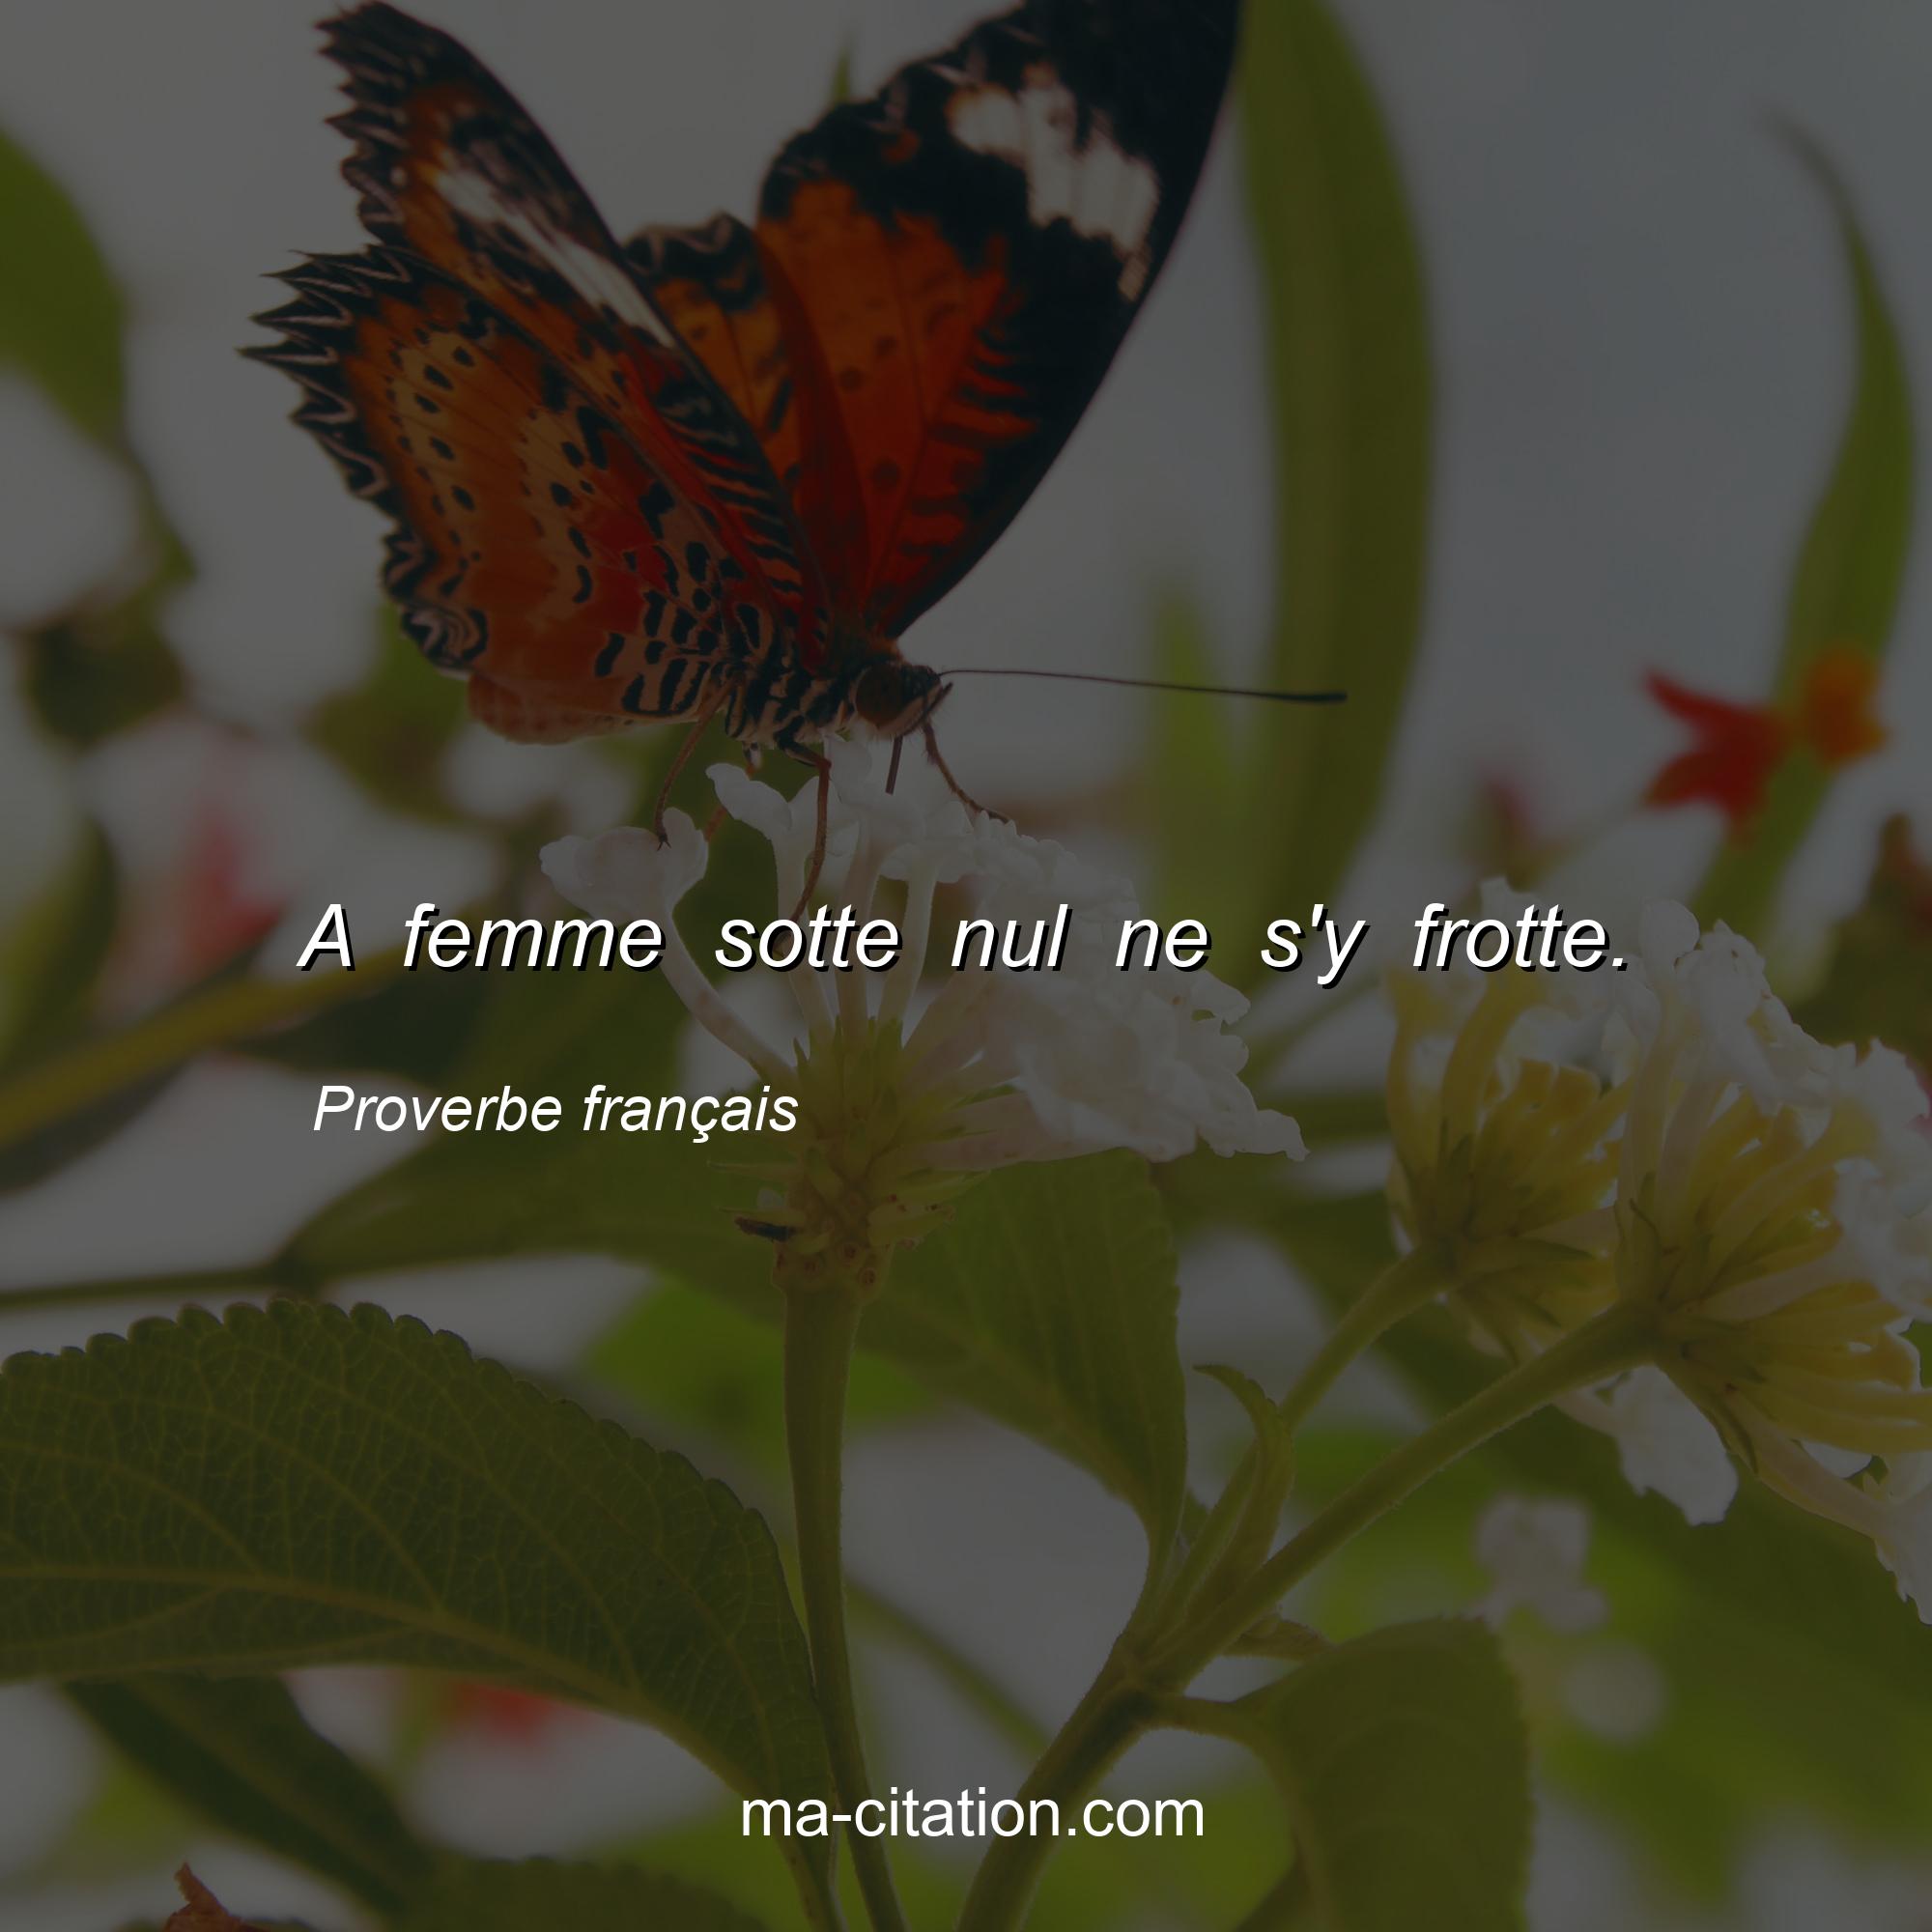 Proverbe français : A femme sotte nul ne s'y frotte.